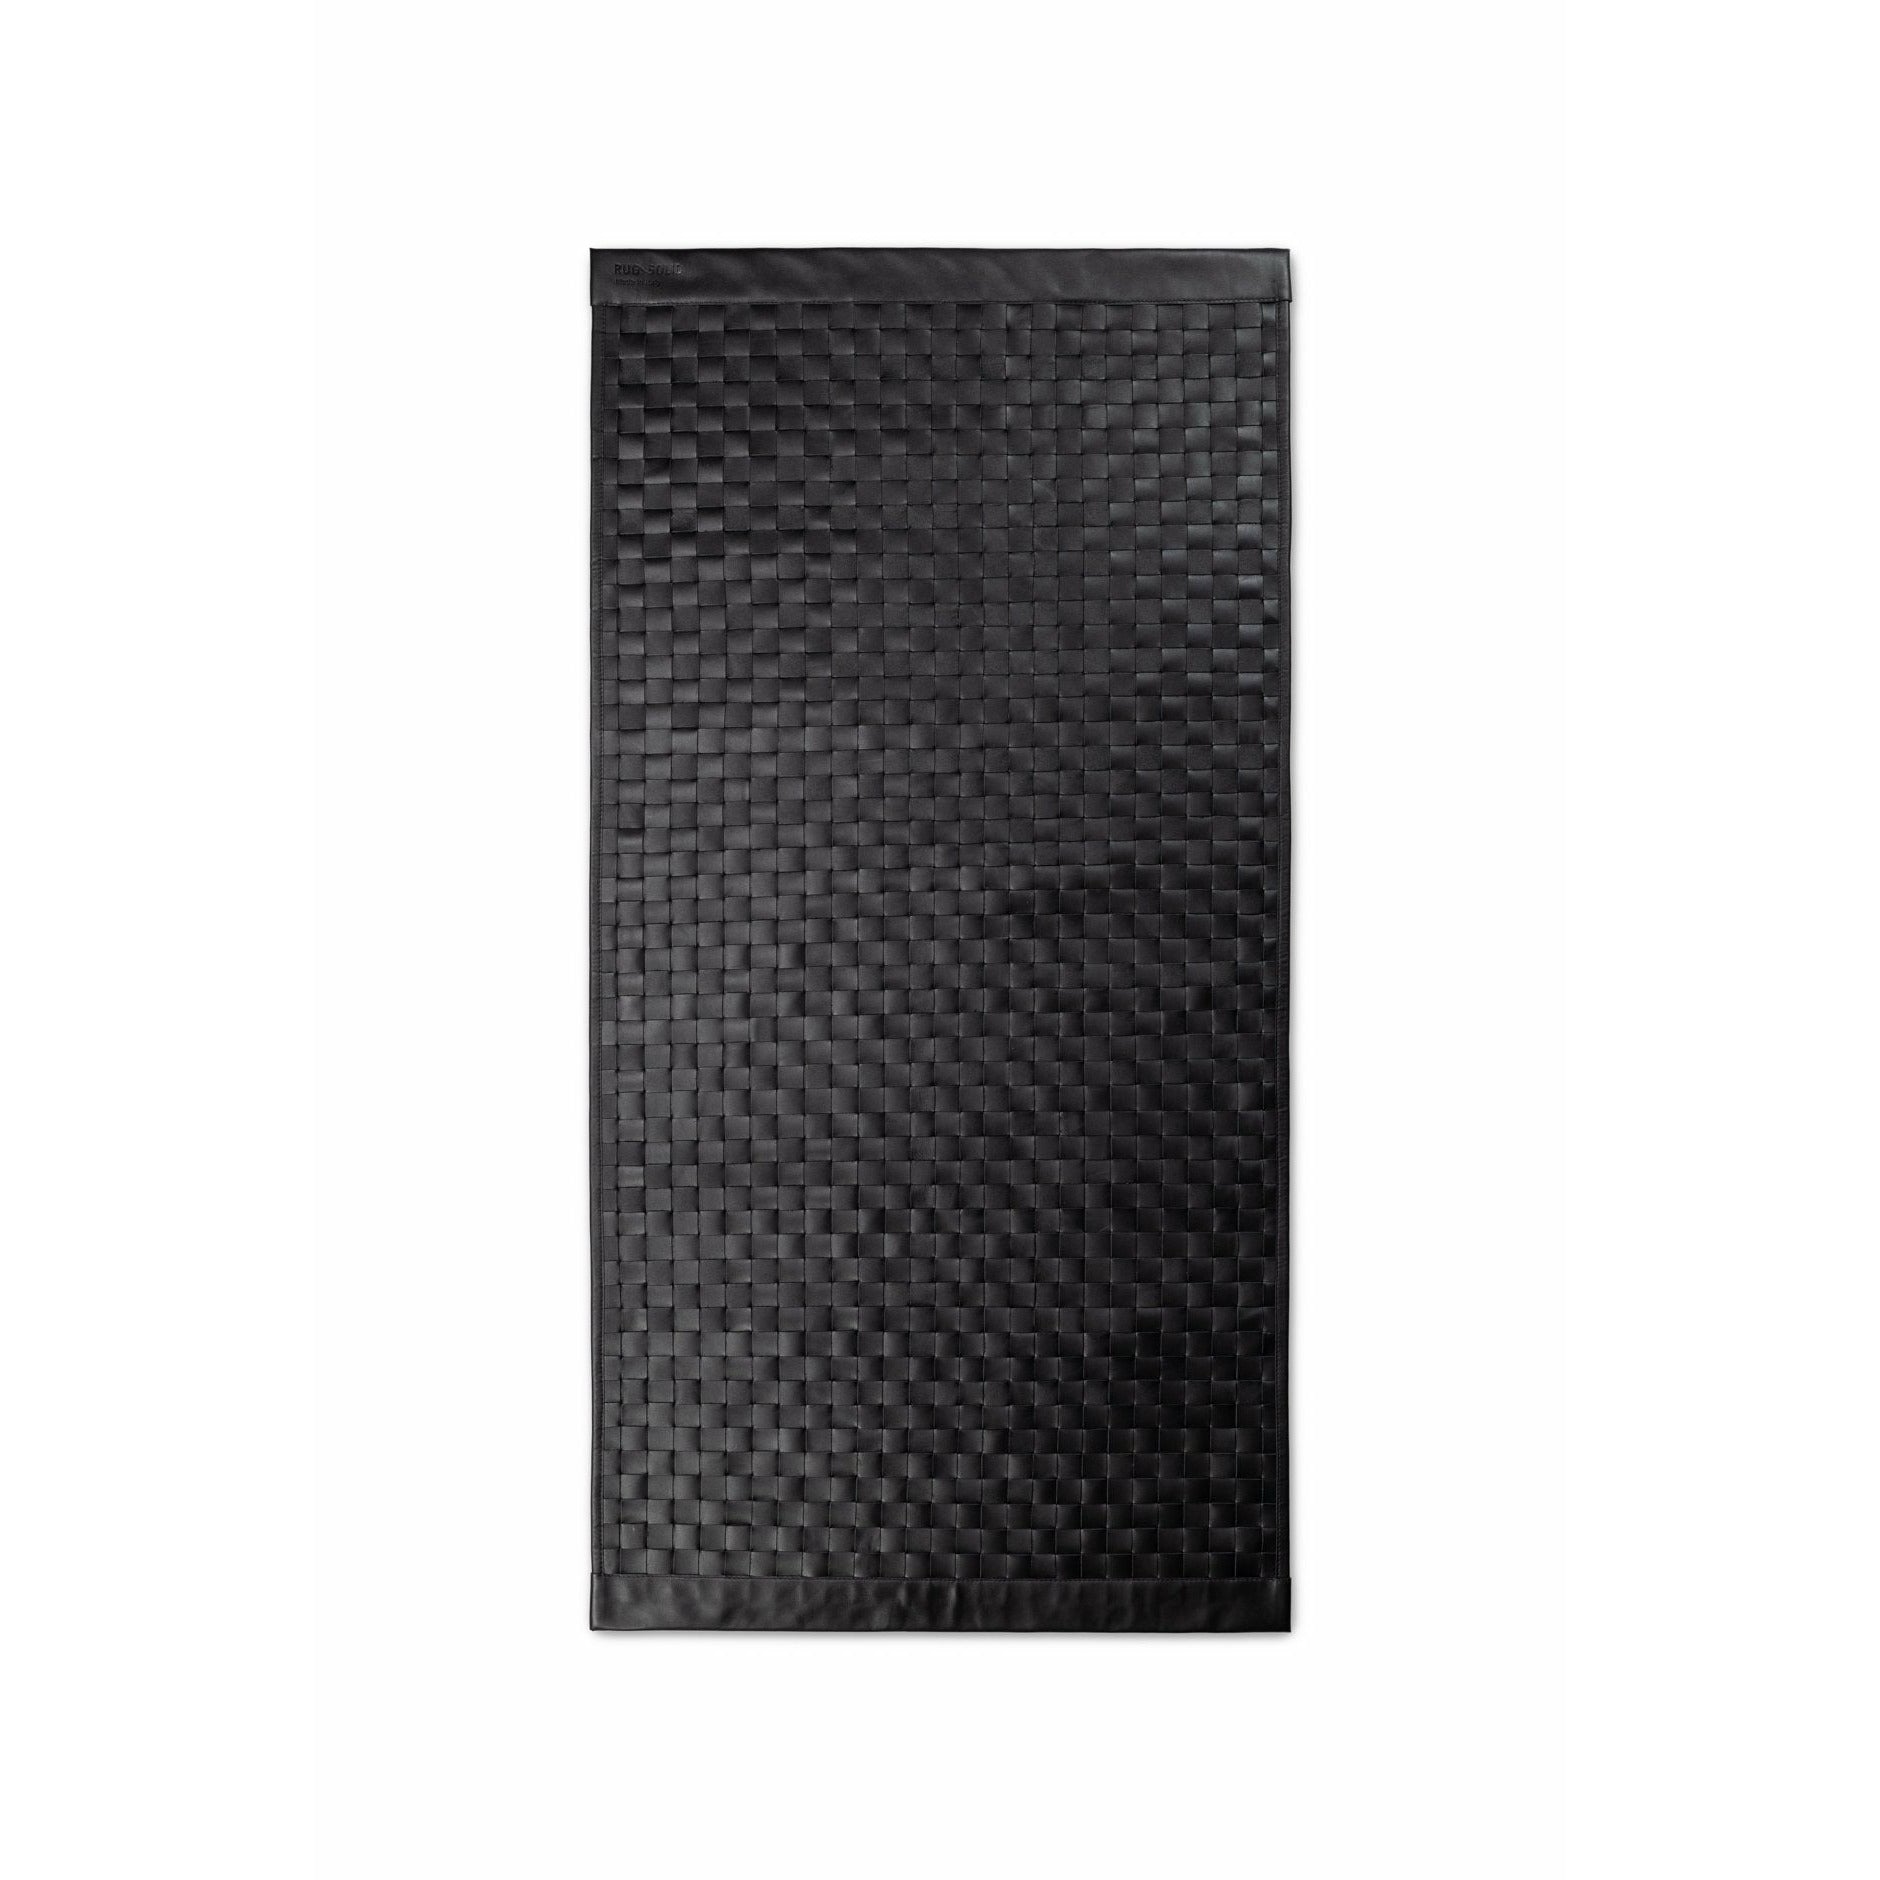 Tappeto toscano solido nero, 140 x 200 cm